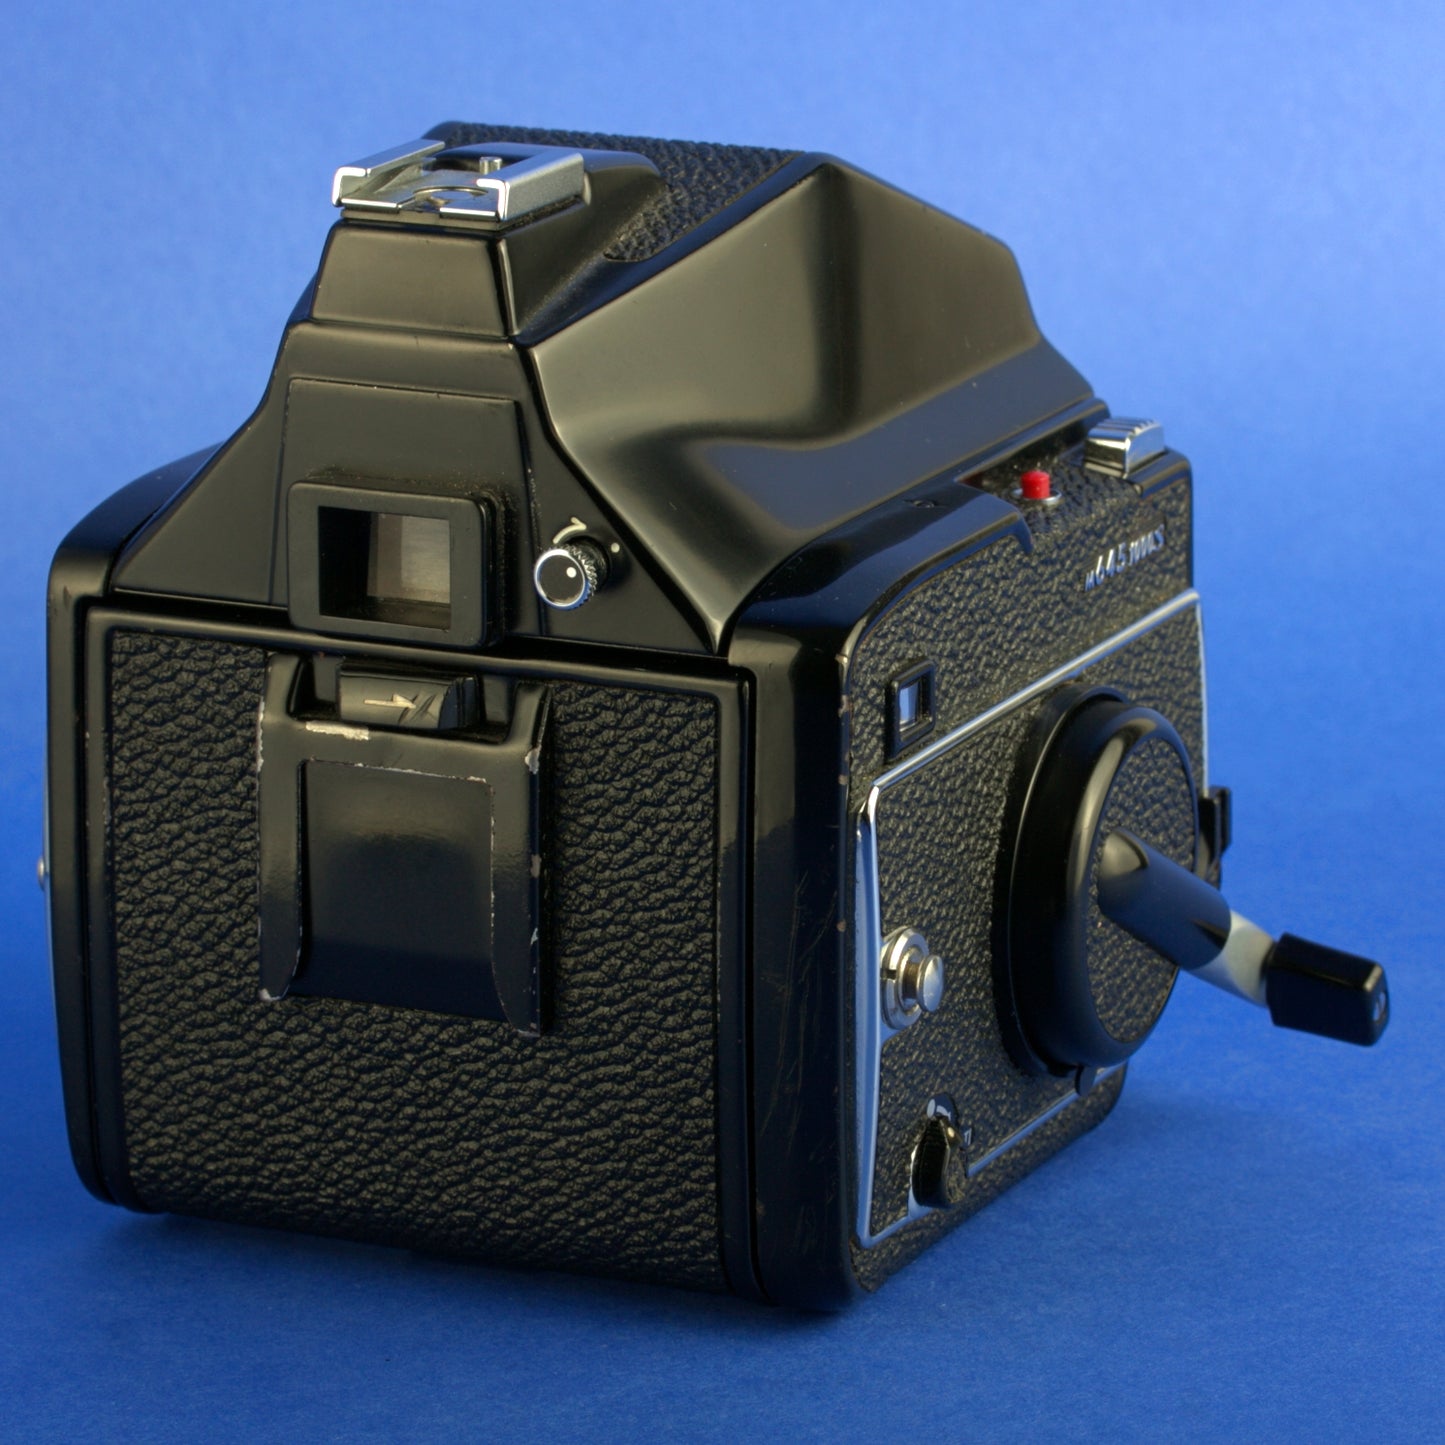 Mamiya M645 1000S Medium Format Camera with 80mm 2.8 Lens